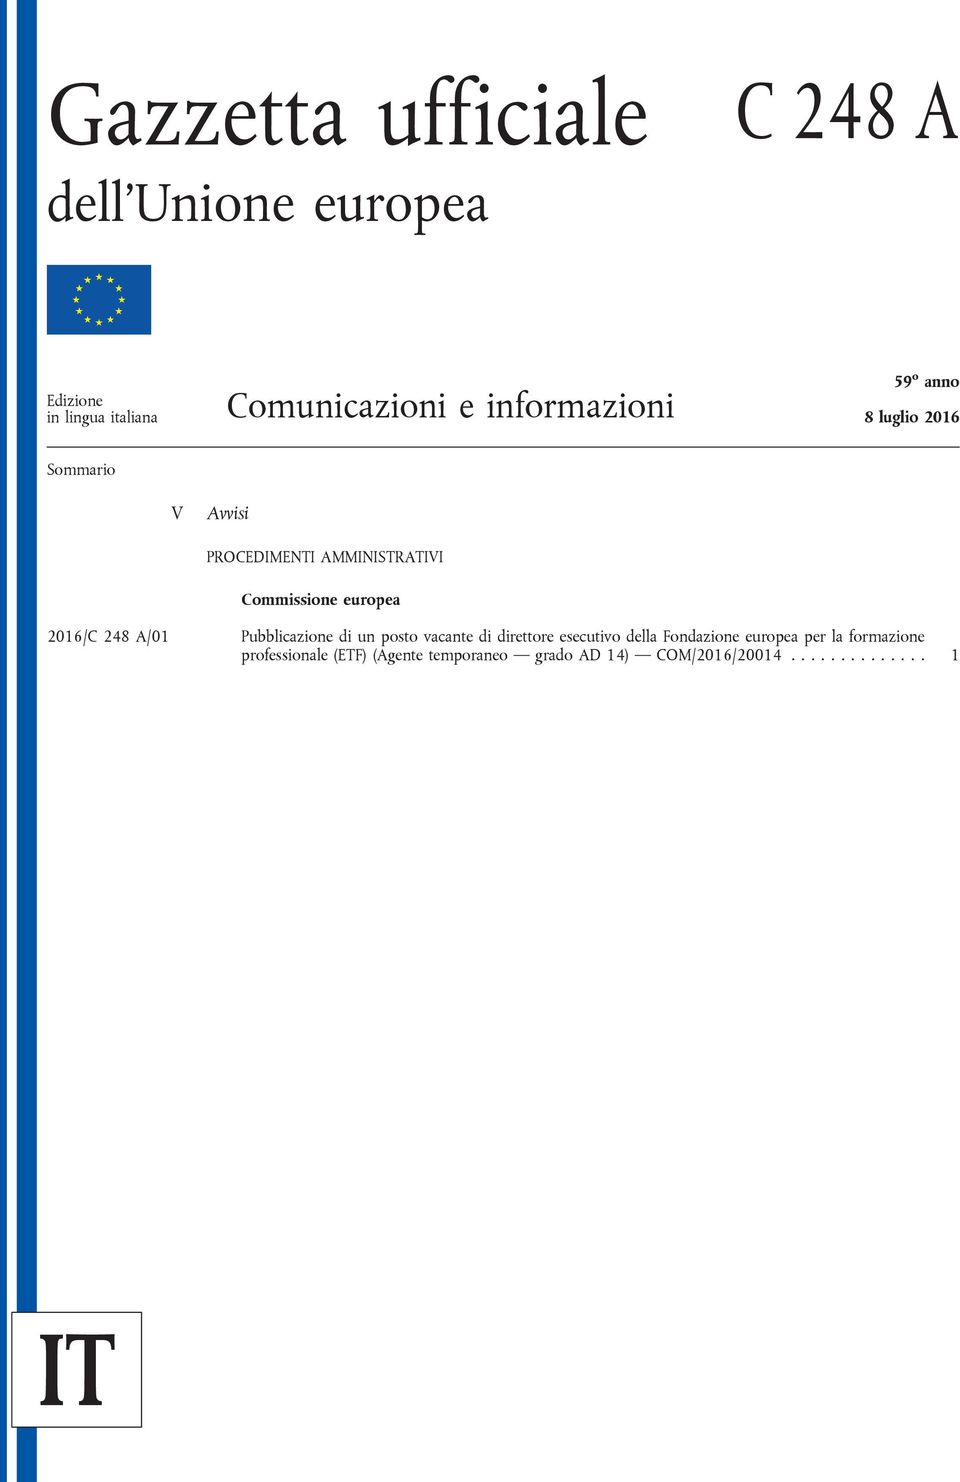 europea 2016/C 248 A/01 Pubblicazione di un posto vacante di direttore esecutivo della Fondazione